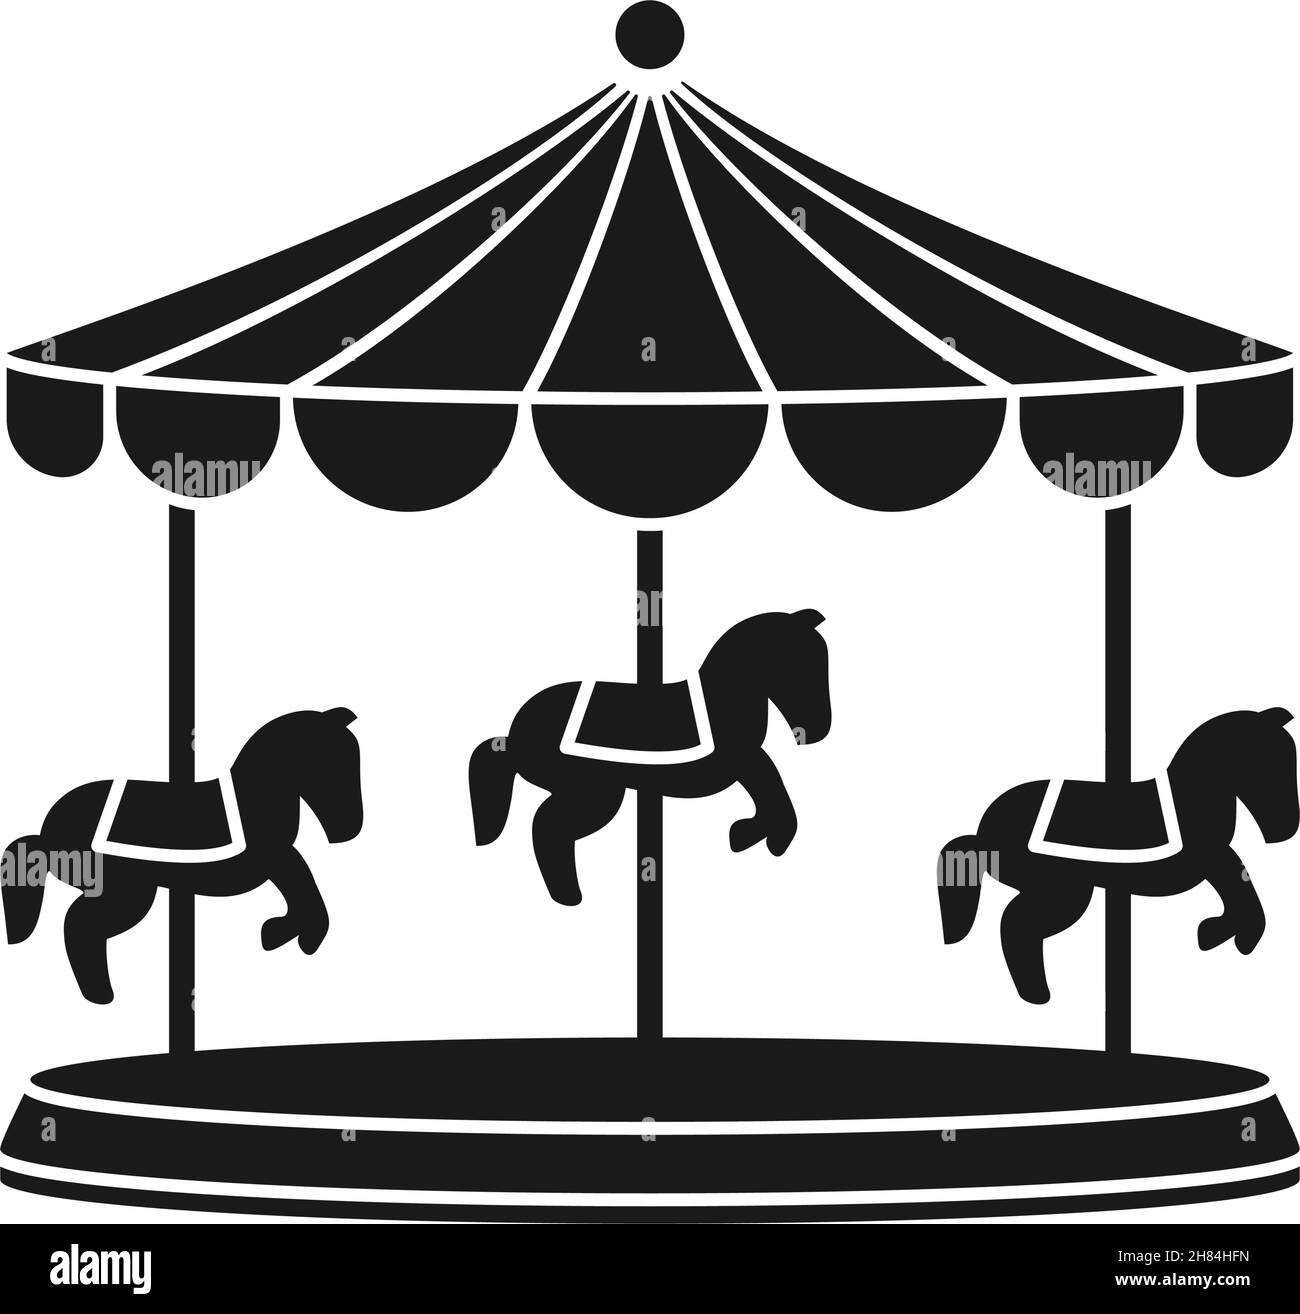 Karussell oder Karussell mit Karussell-Pferden für den Vergnügungsritt in Silhouette Vektor-Symbol Stock Vektor